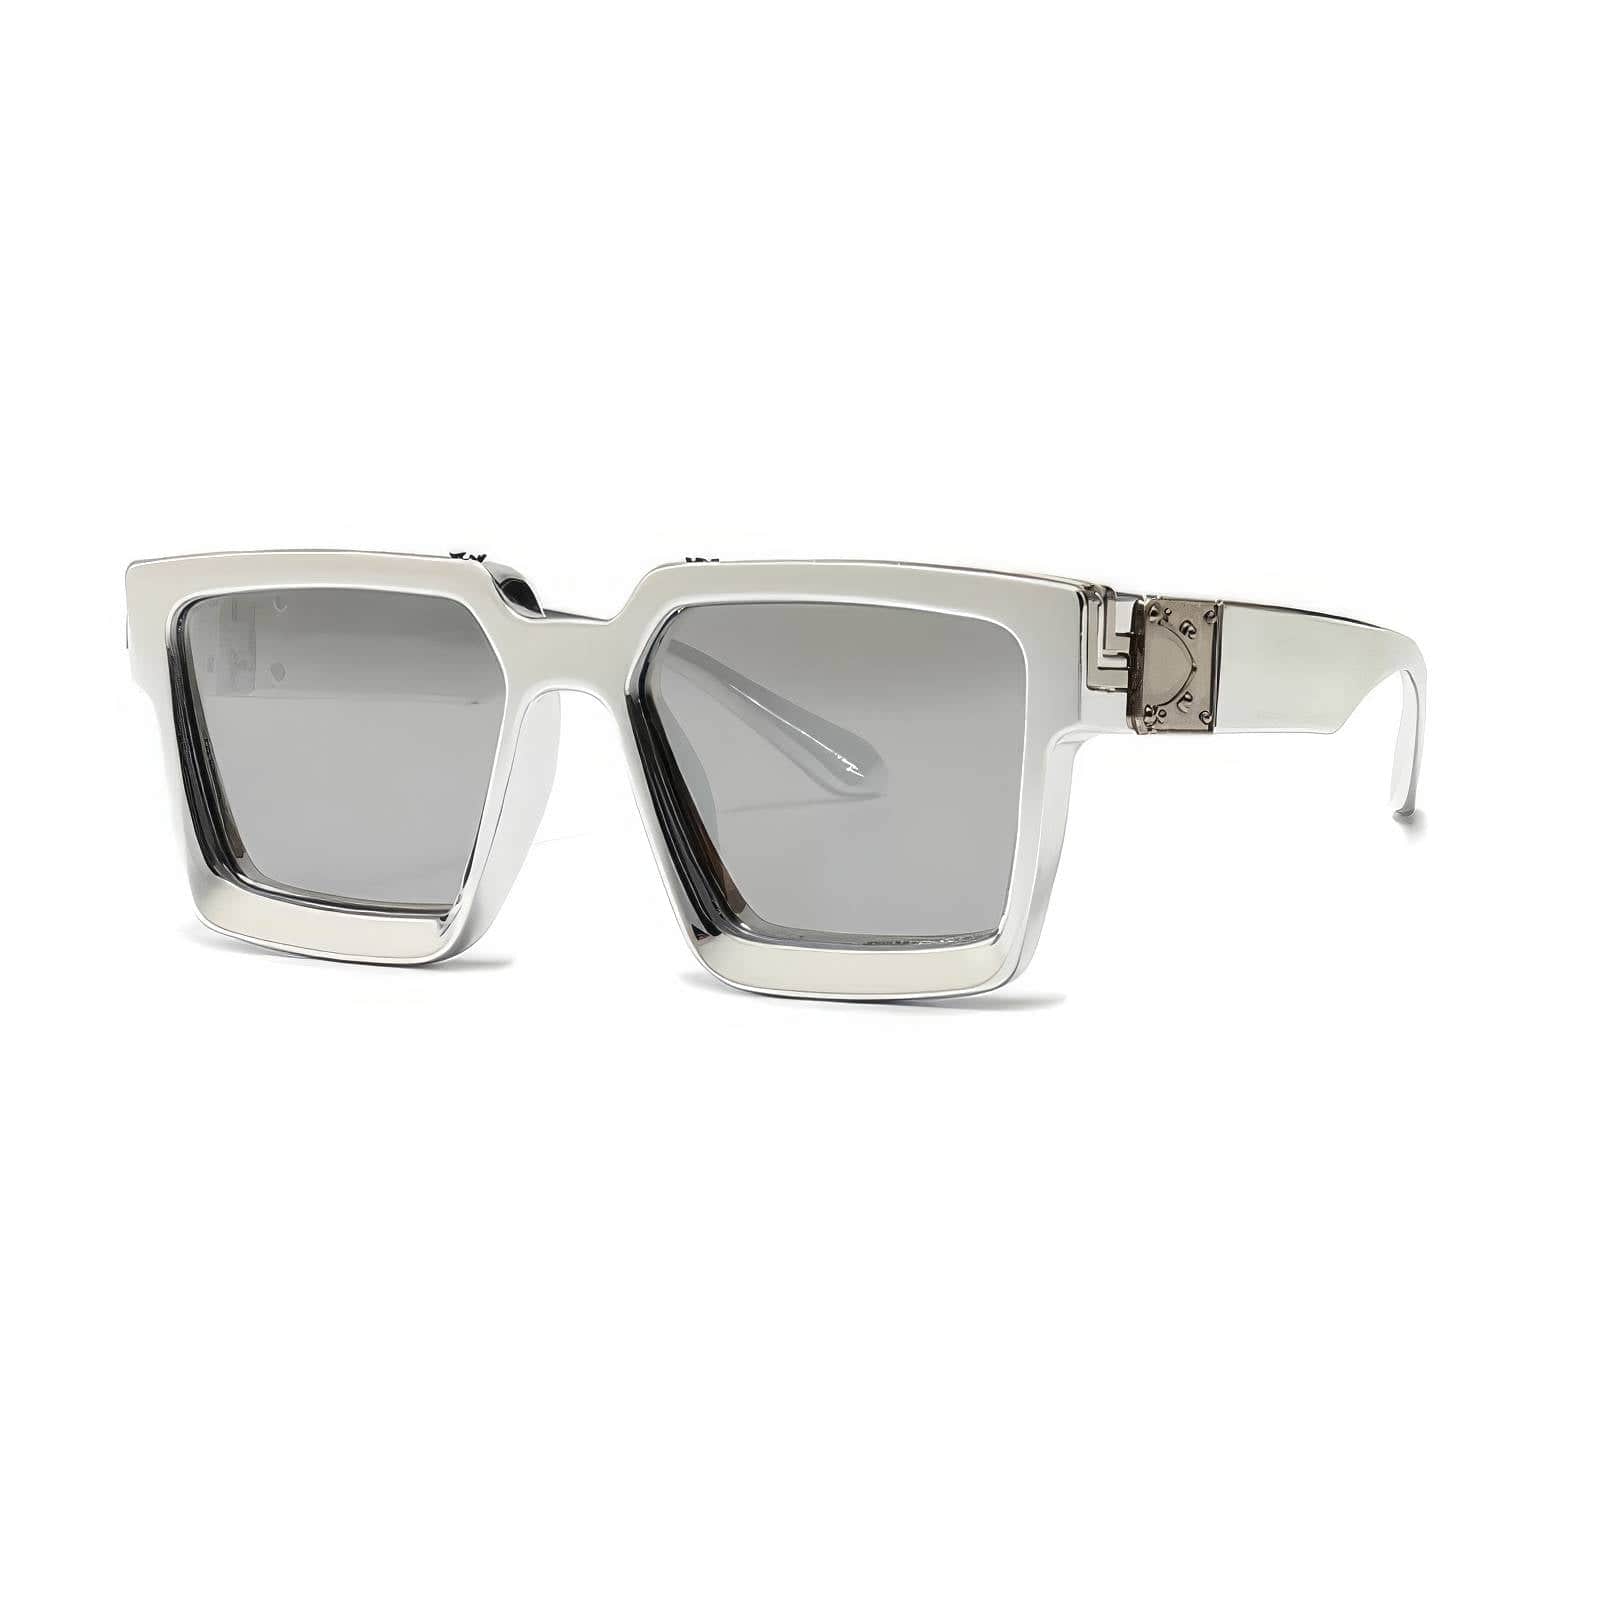 Big Frame Square Eyewear Silver/Silver / Resin